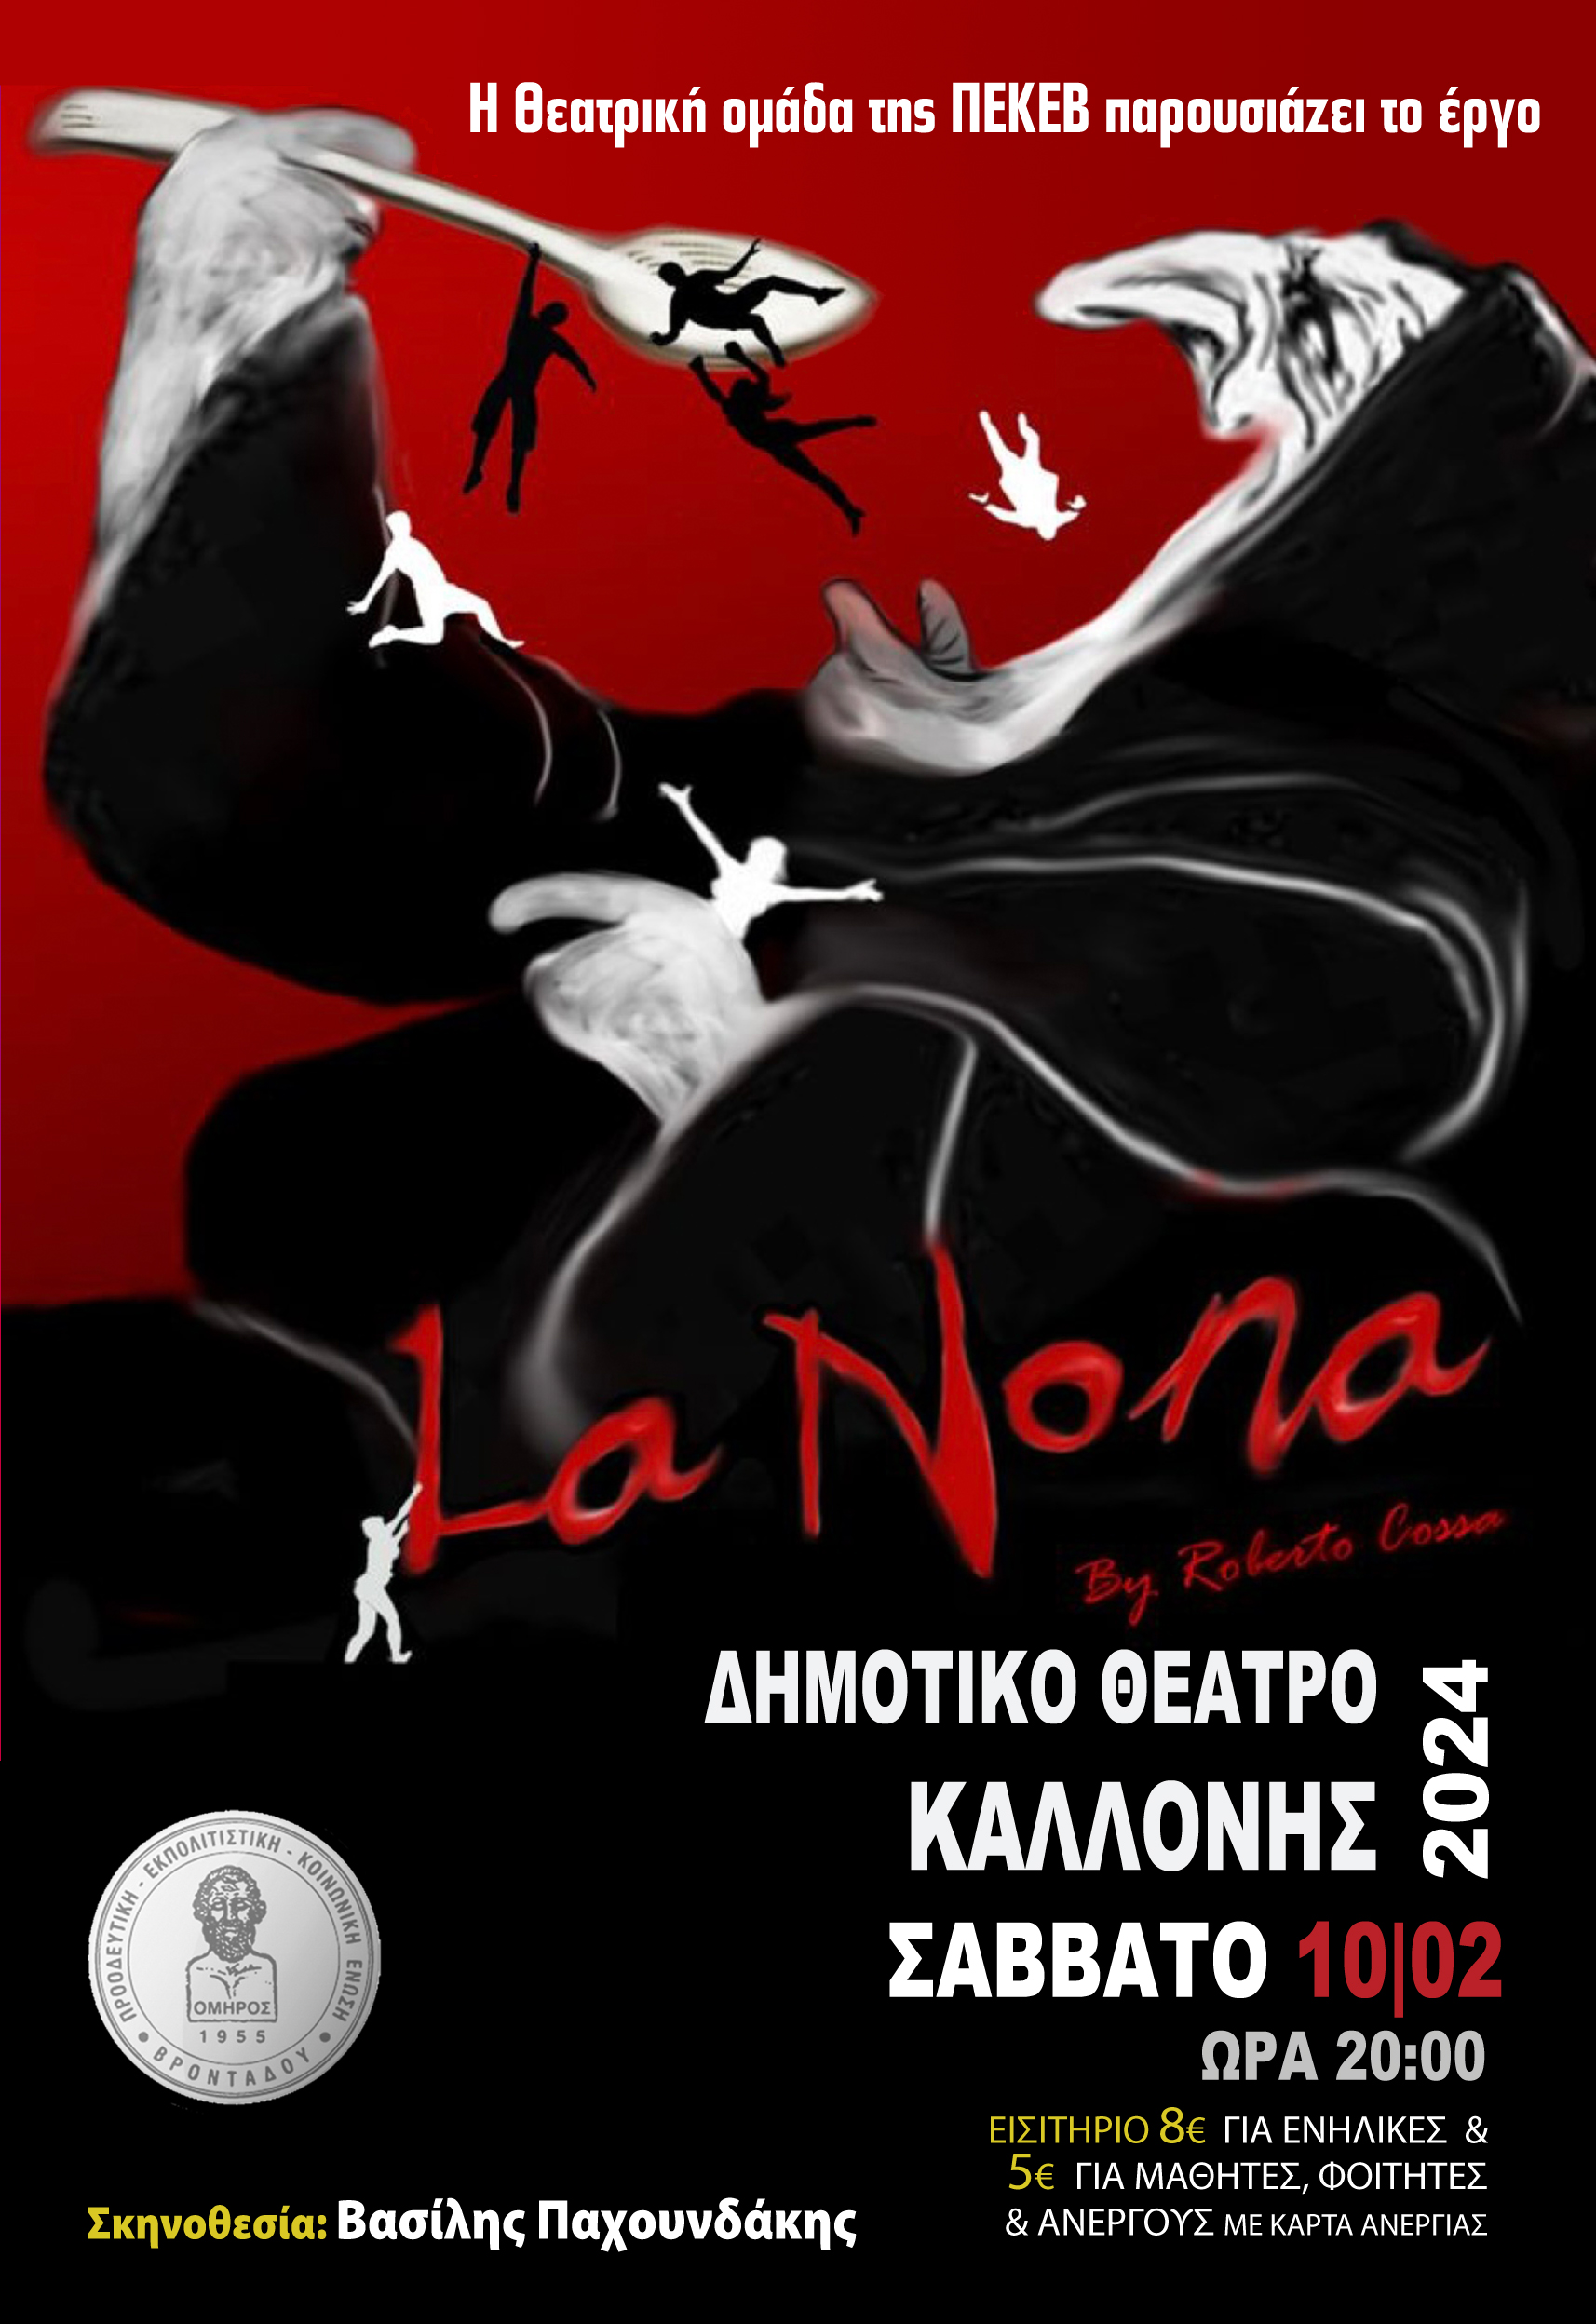 «La Nona» η μαύρη κωμωδία του Ρομπέρτο Κόσσα στο Δημοτικό θέατρο Καλλονής